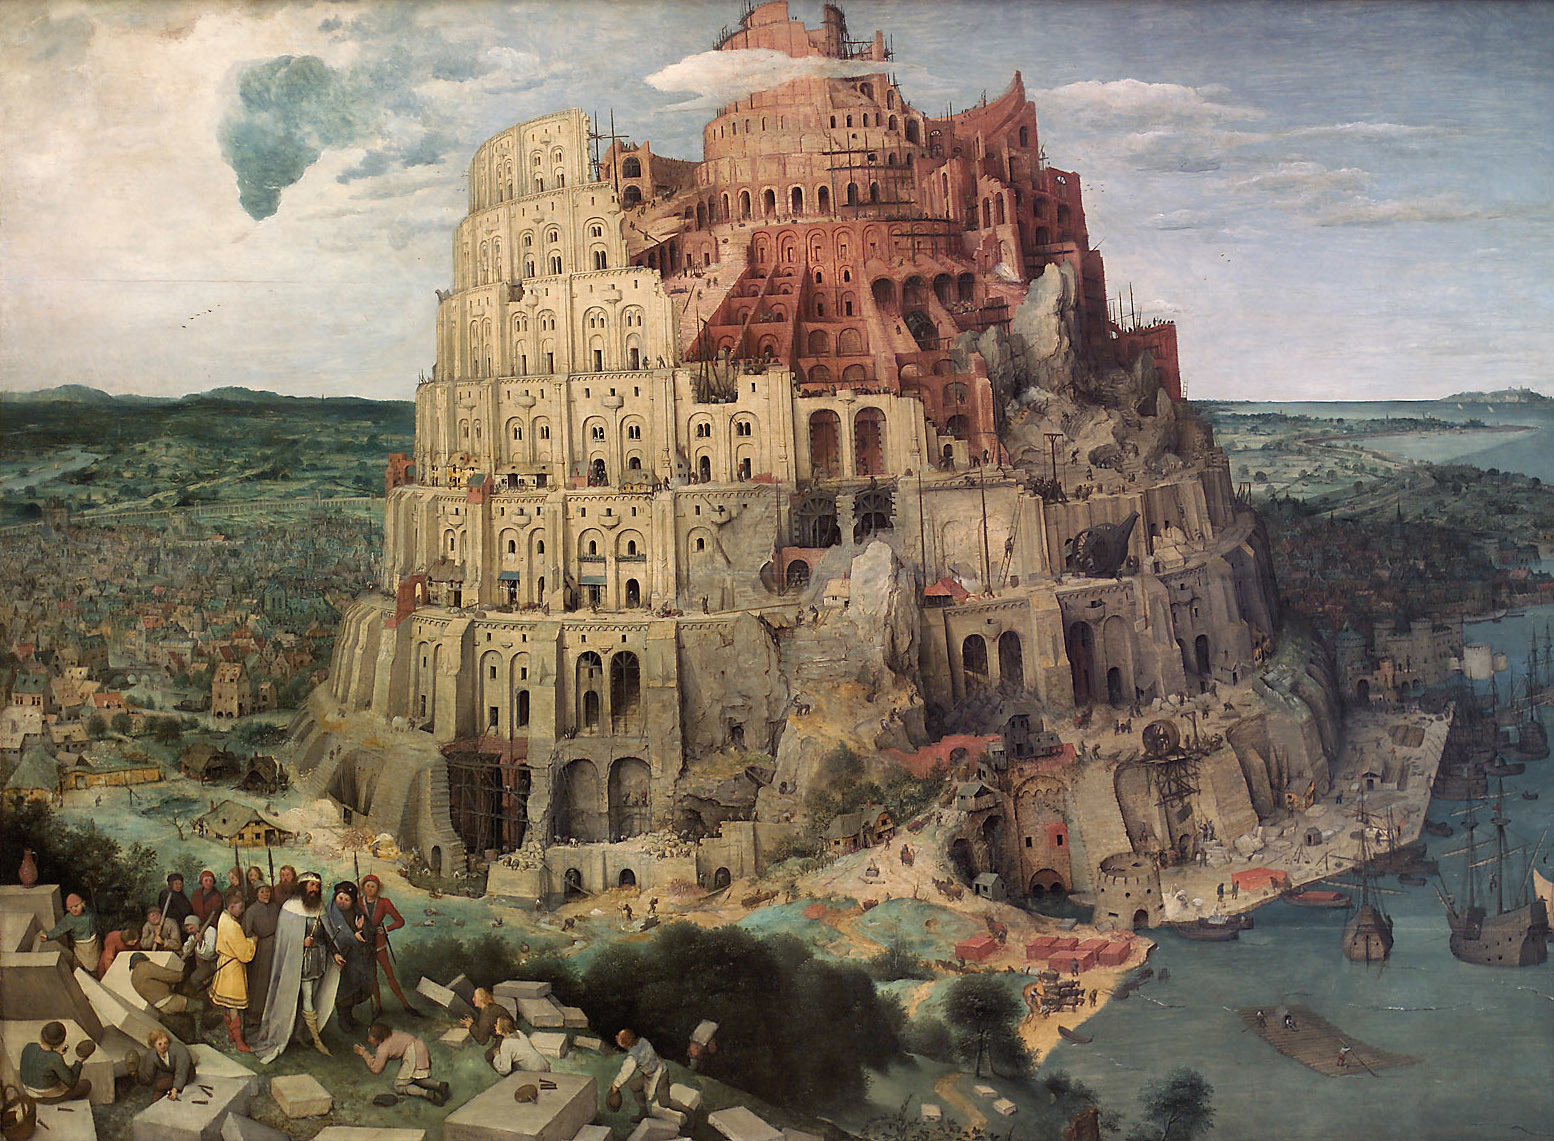 The Tower of Babel by Pieter Bruegel the Elder - 1566 - 114.3 × 155.1 cm Kunsthistorisches Museum